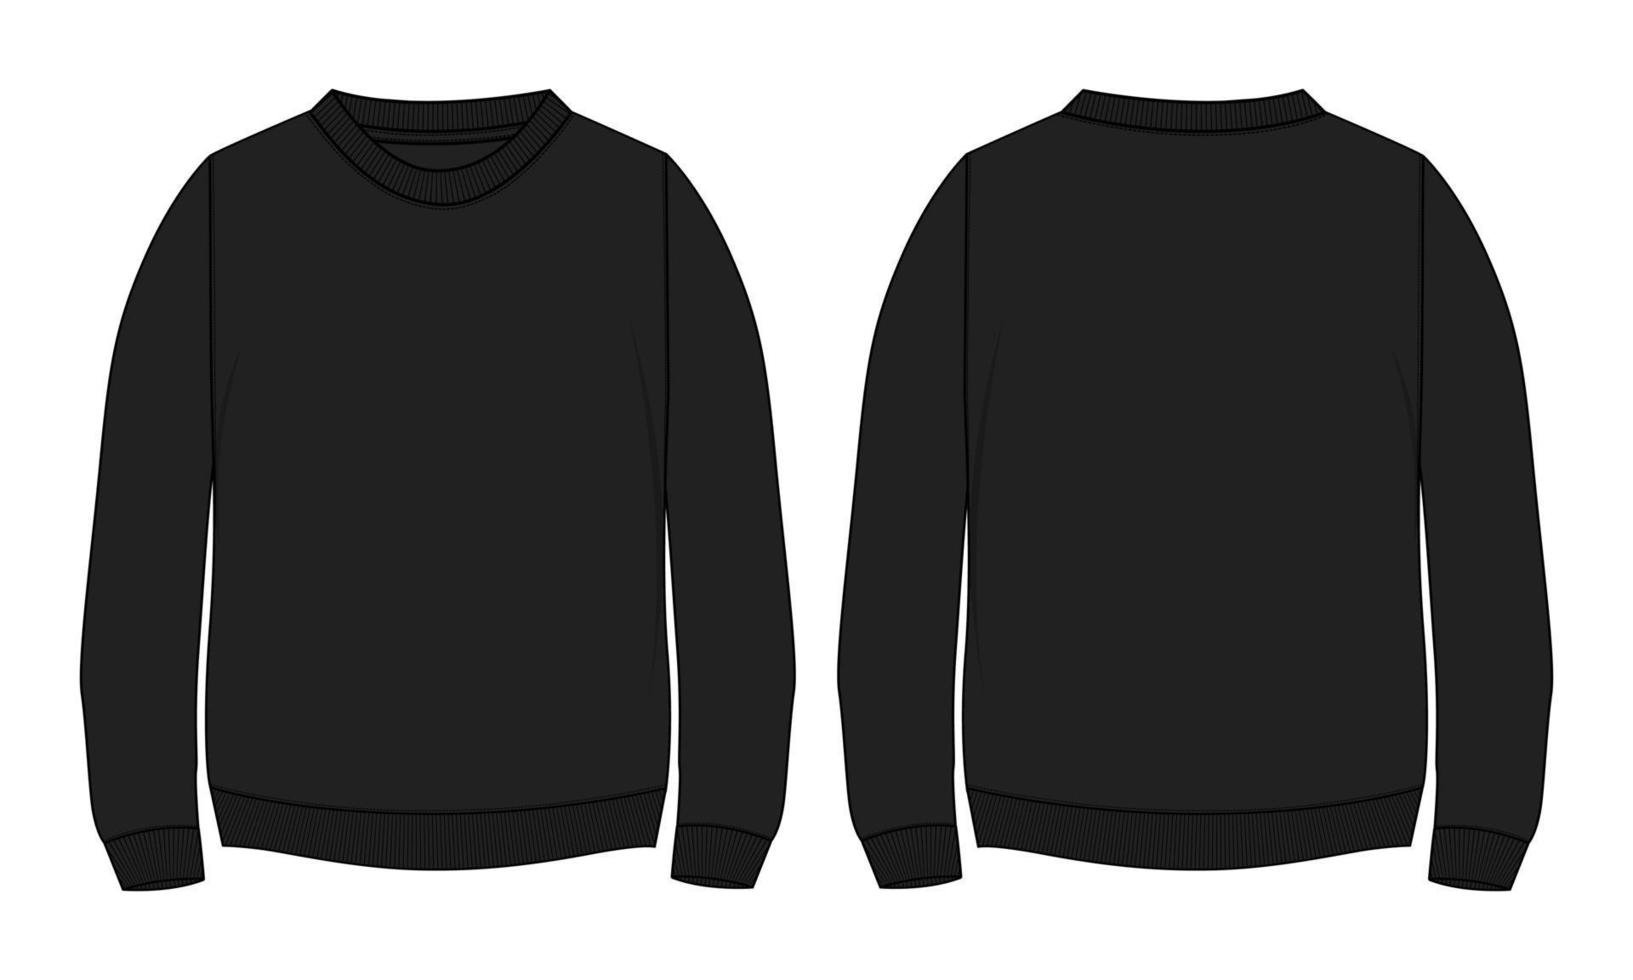 Langarm-Sweatshirt technische Mode flache Skizze Vektor Illustration Vorlage Vorder- und Rückansichten.